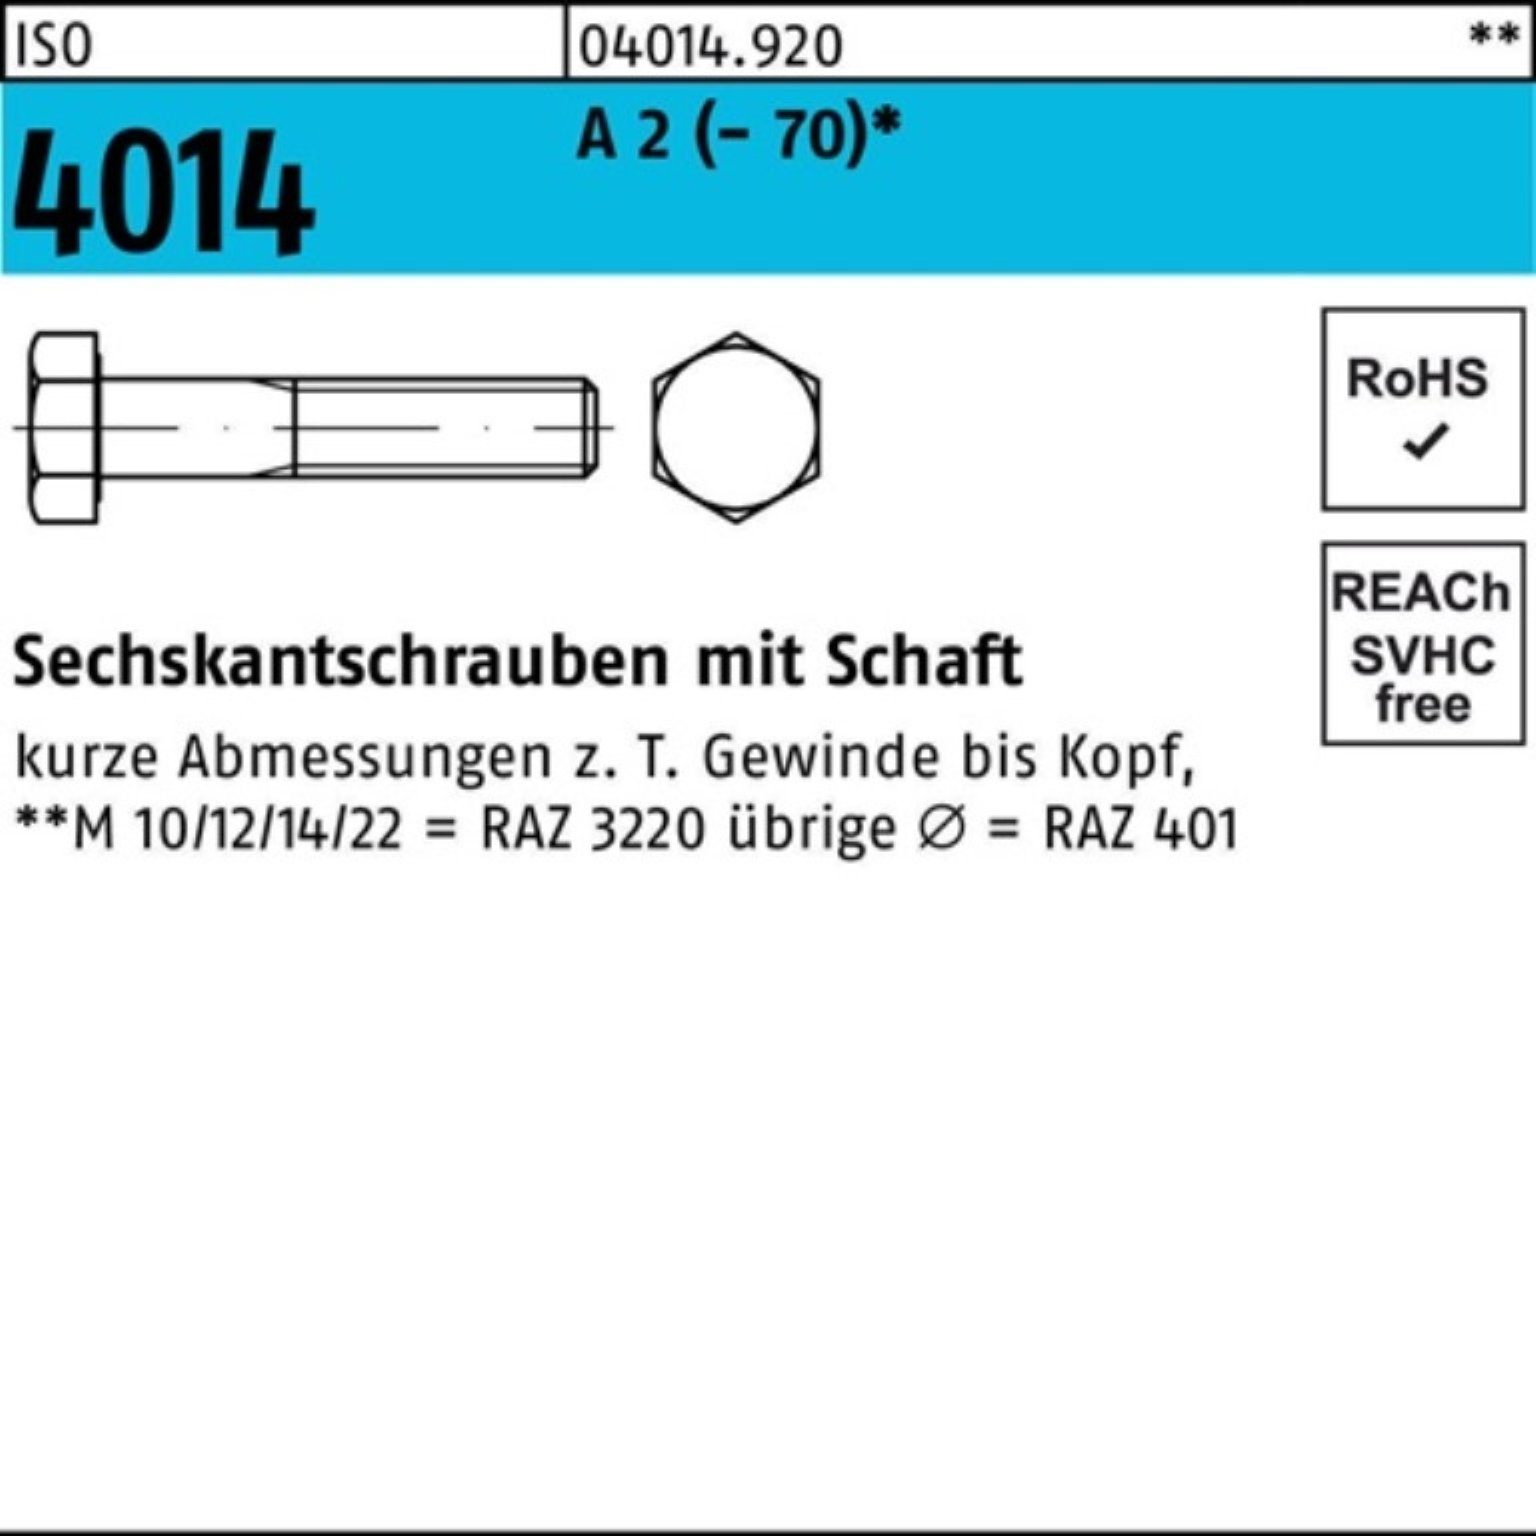 Bufab Sechskantschraube 100er Pack Sechskantschraube ISO 4014 Schaft M5x 30 A 2 (70) 100 St